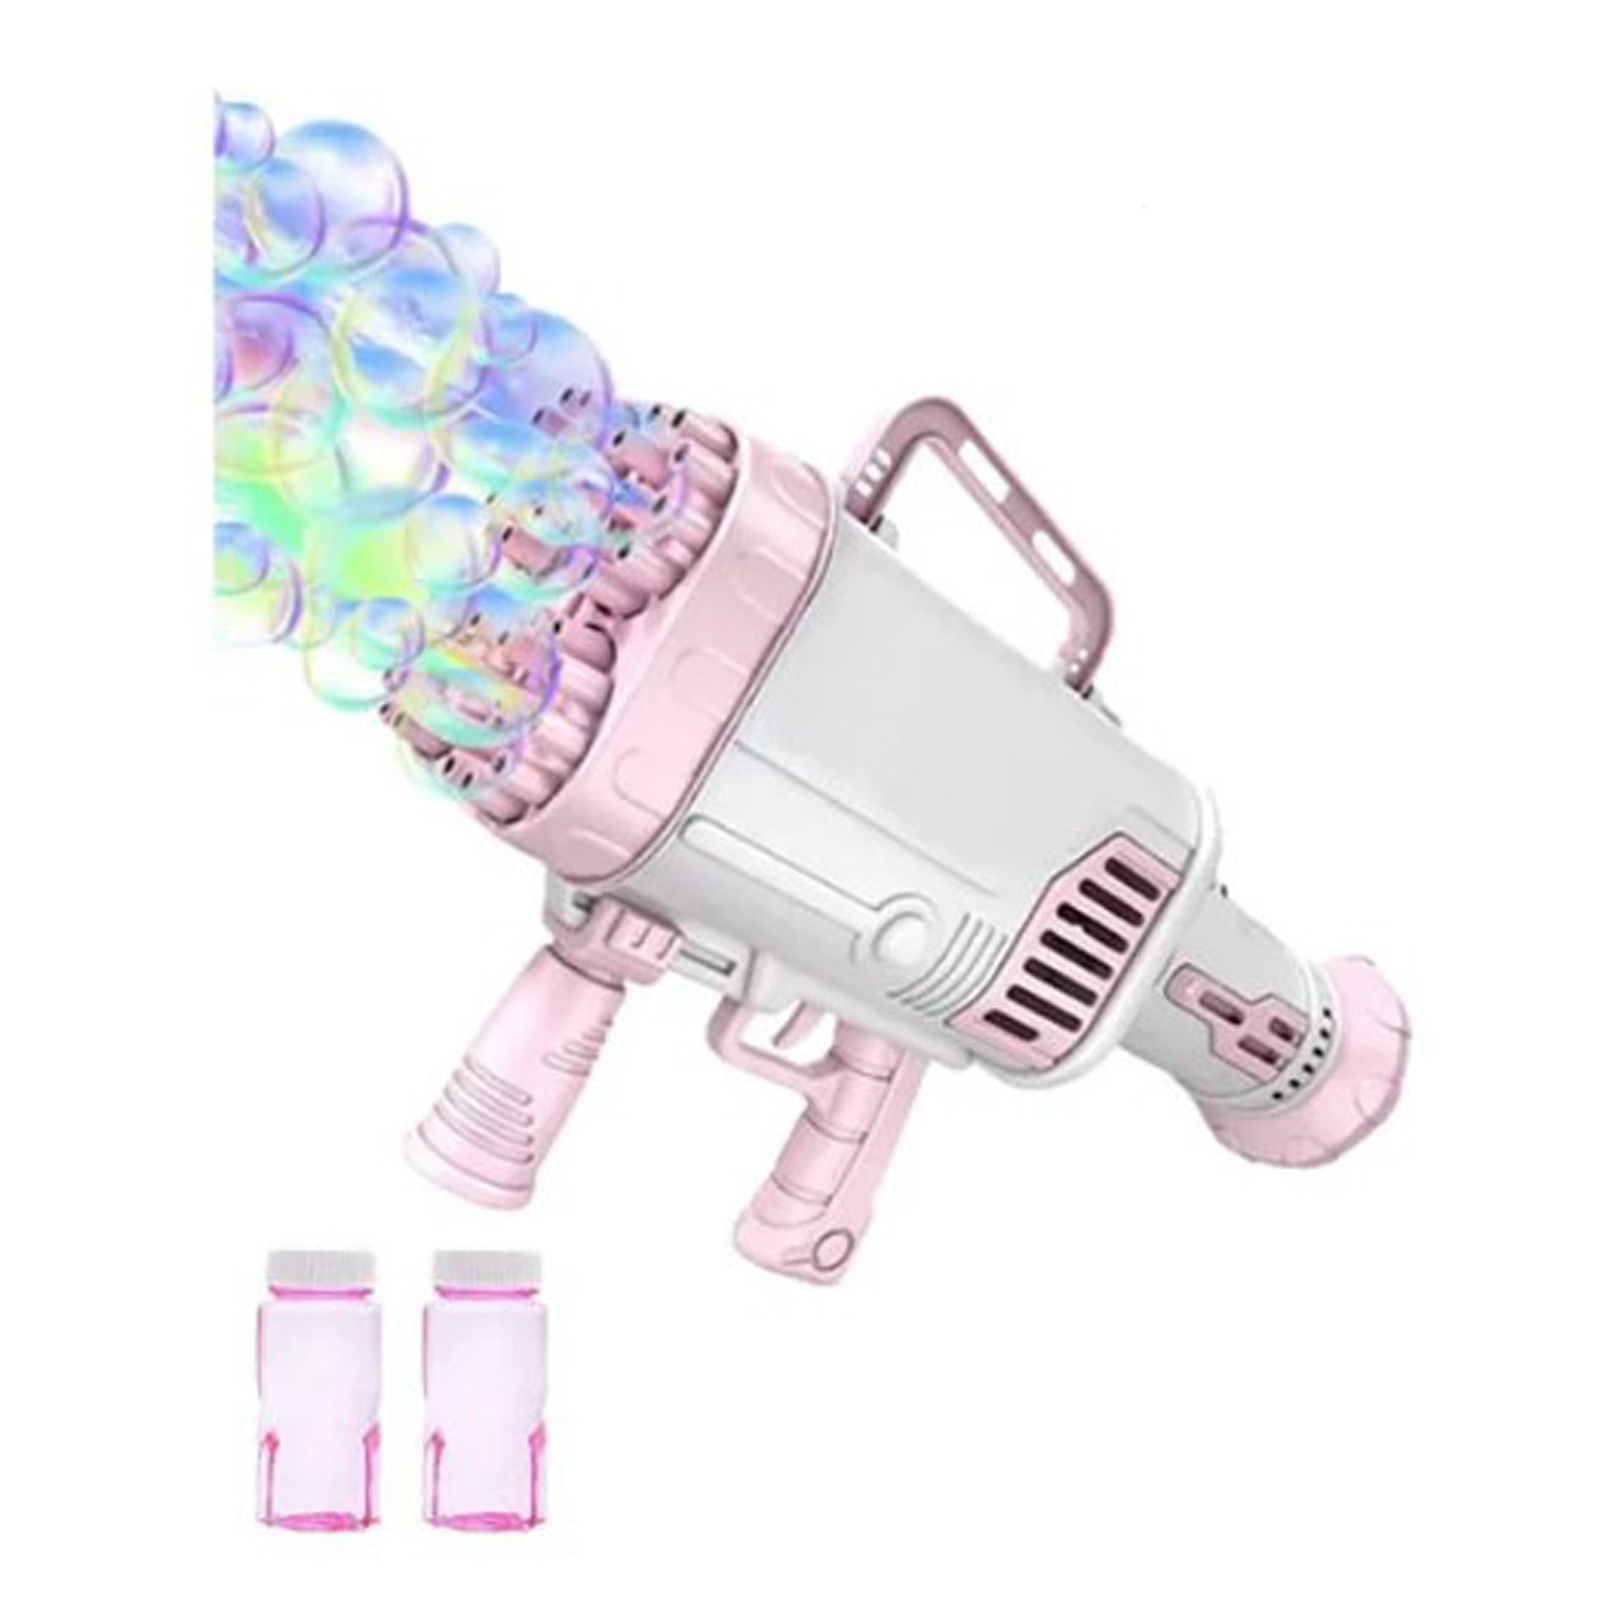 Пушка-Генератор мыльных пузырей Market toys lab розовый пистолет генератор мыльных пузырей sellwildwoman розовый